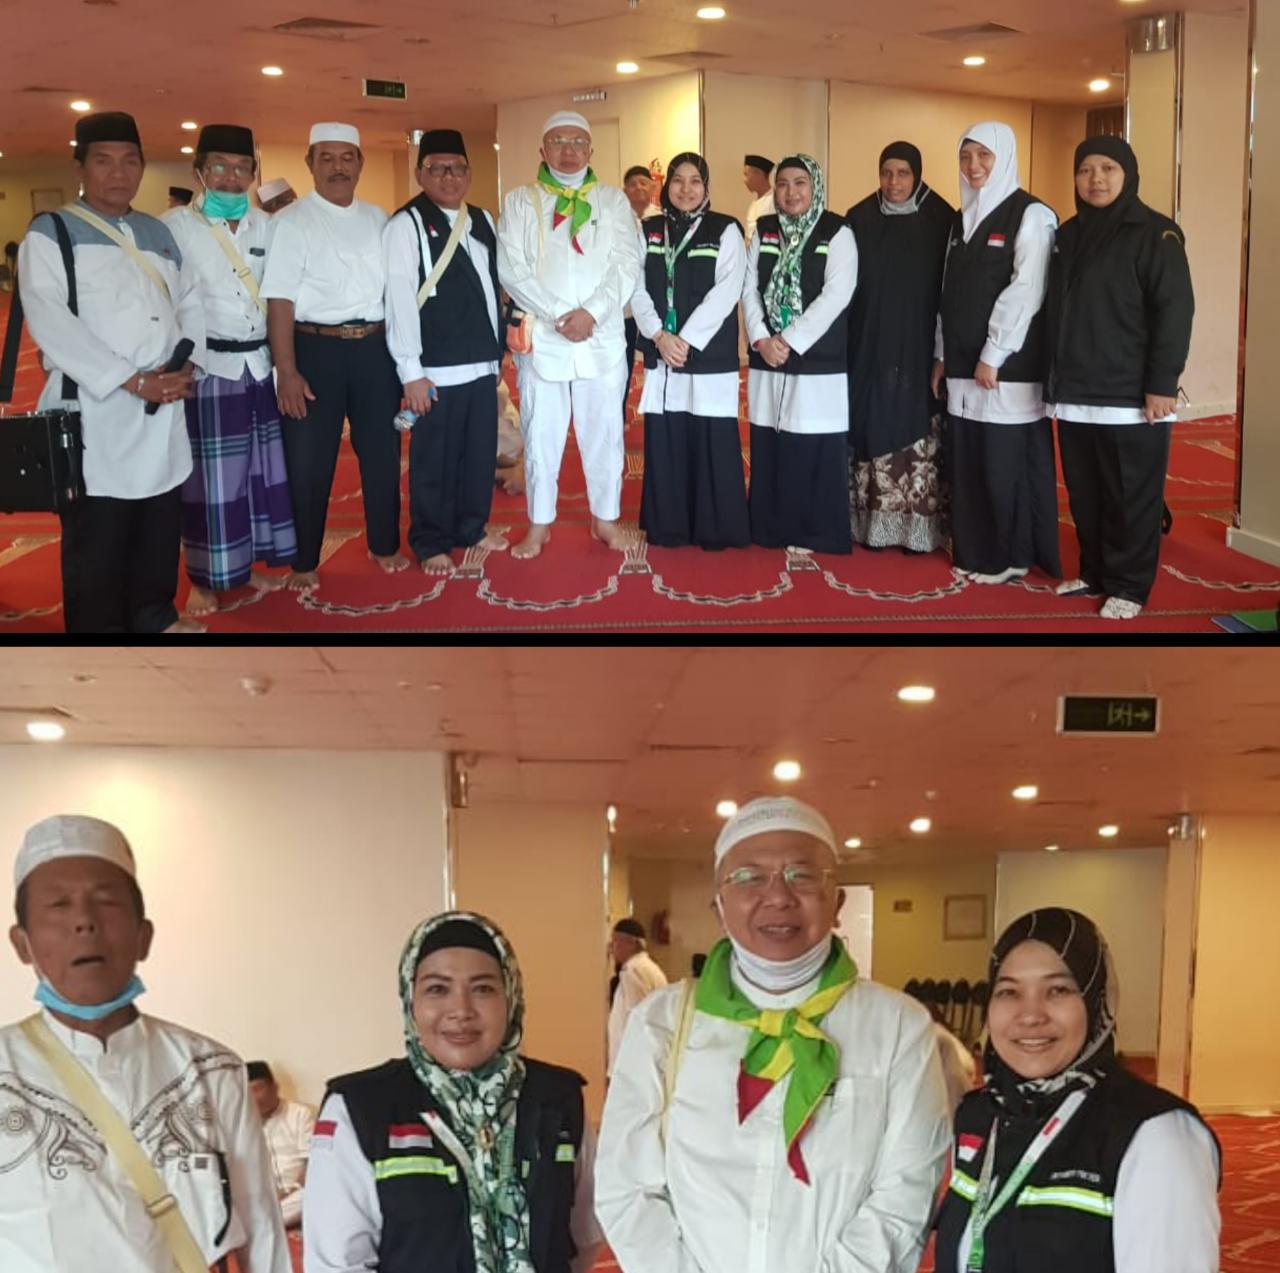 Serba-Serbi Haji Kabupaten Sergai 2019, Berbagai Persiapan Dilakukan Menjelang Arafah